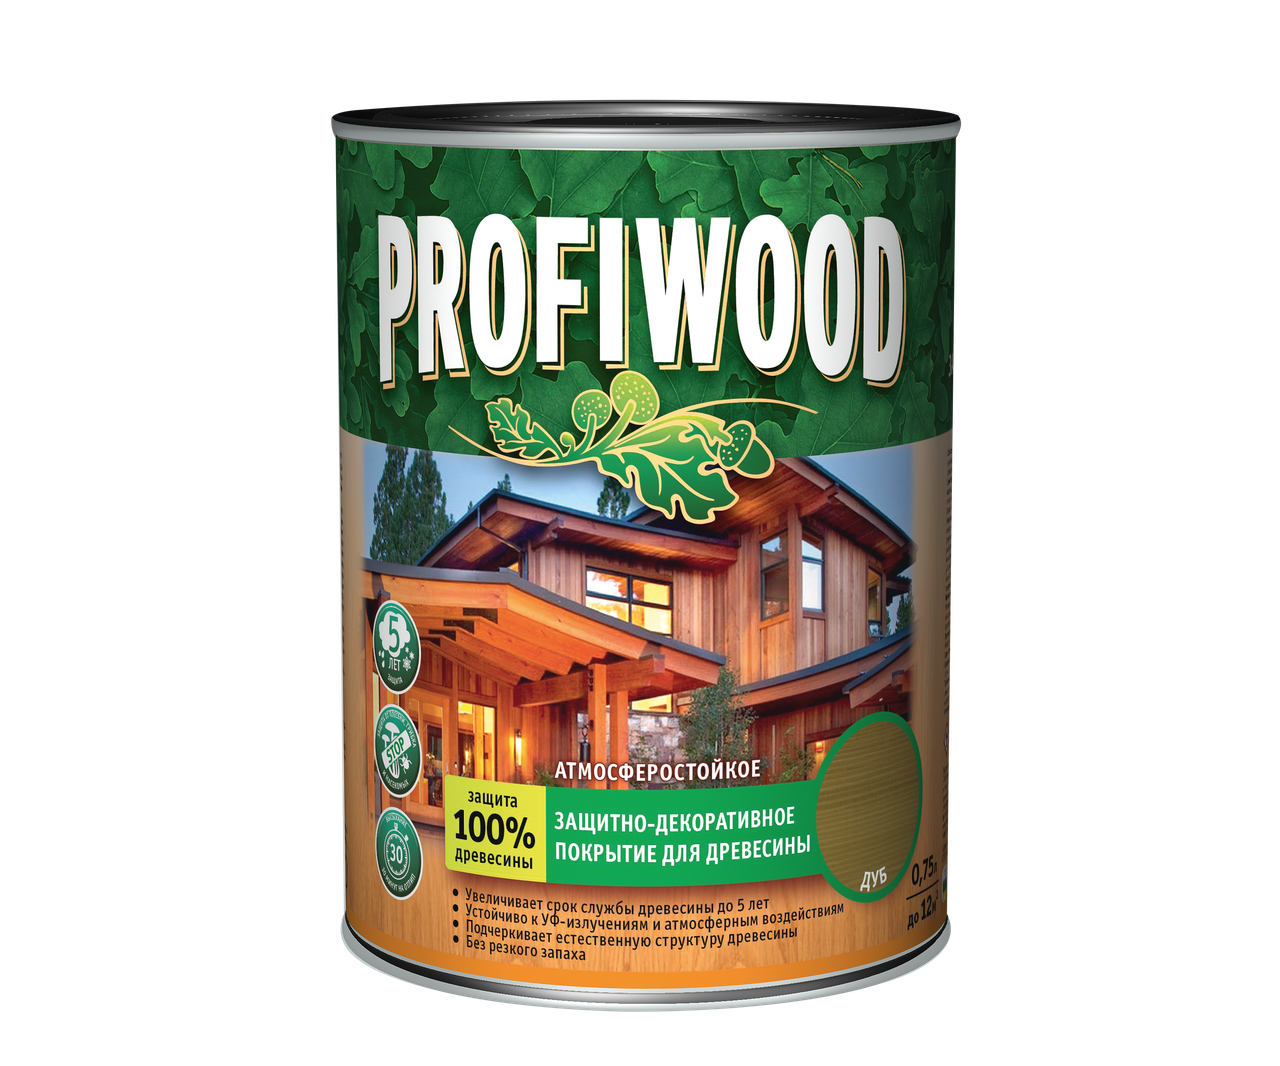 Защитно-декоративное покрытие для древесины PROFIWOOD красное дерево 2.5л / 2.3 кг